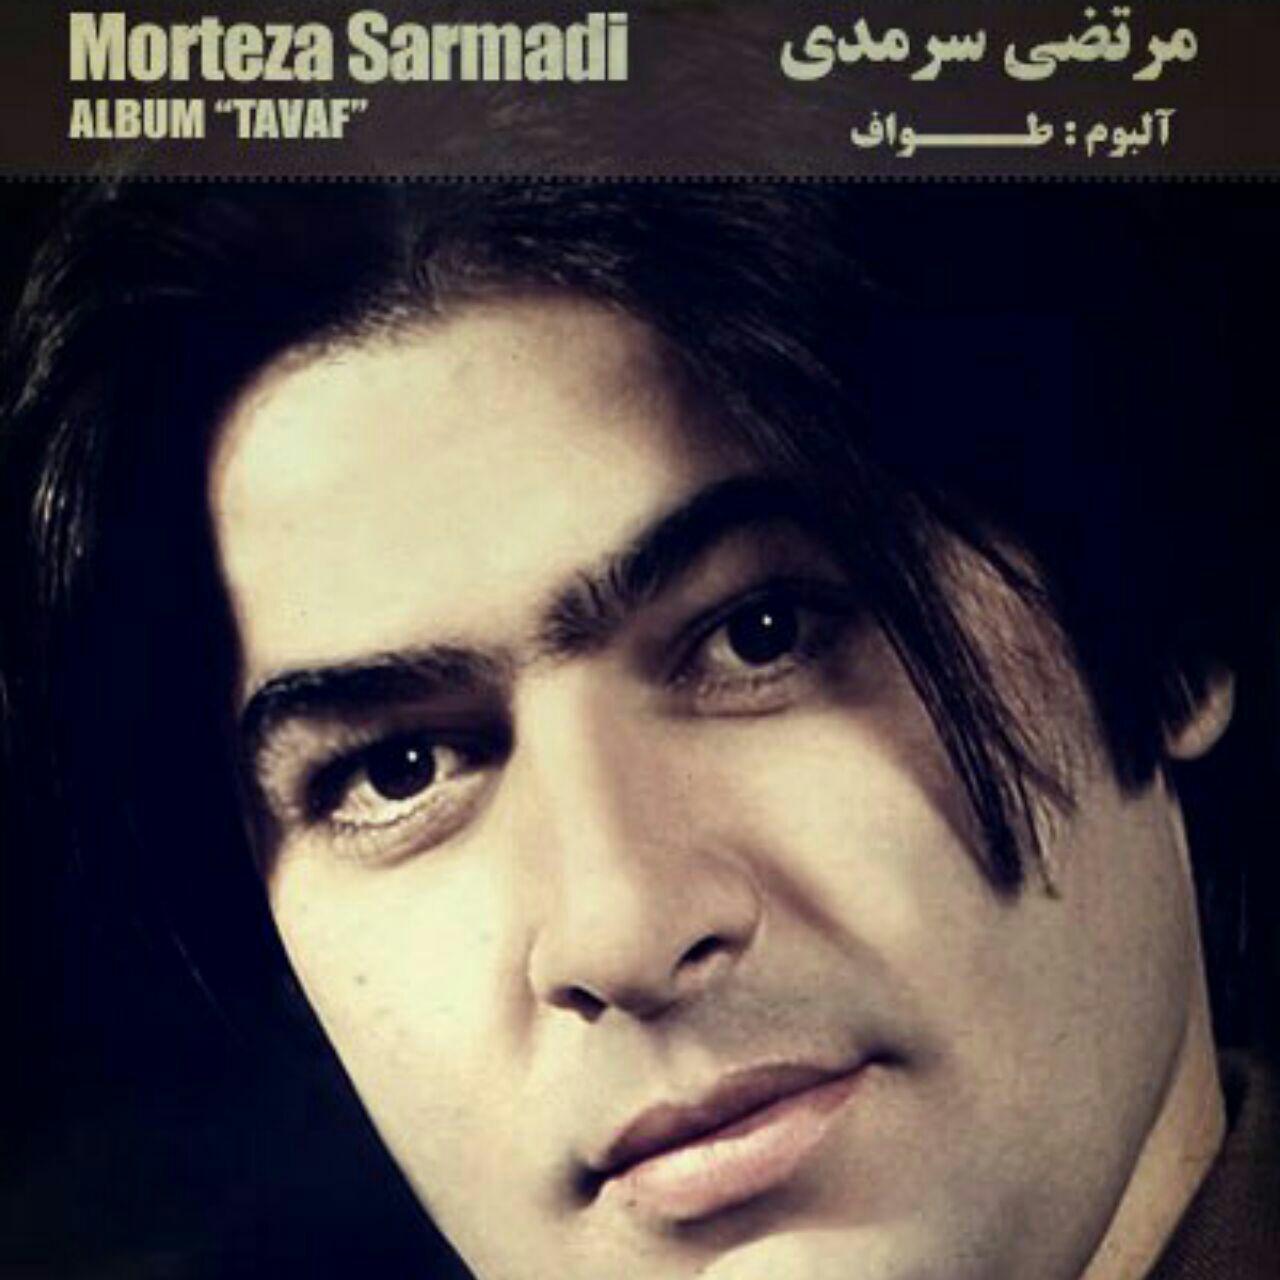  دانلود آهنگ جدید مرتضی سرمدی - خیال | Download New Music By Morteza Sarmadi - Khiyal